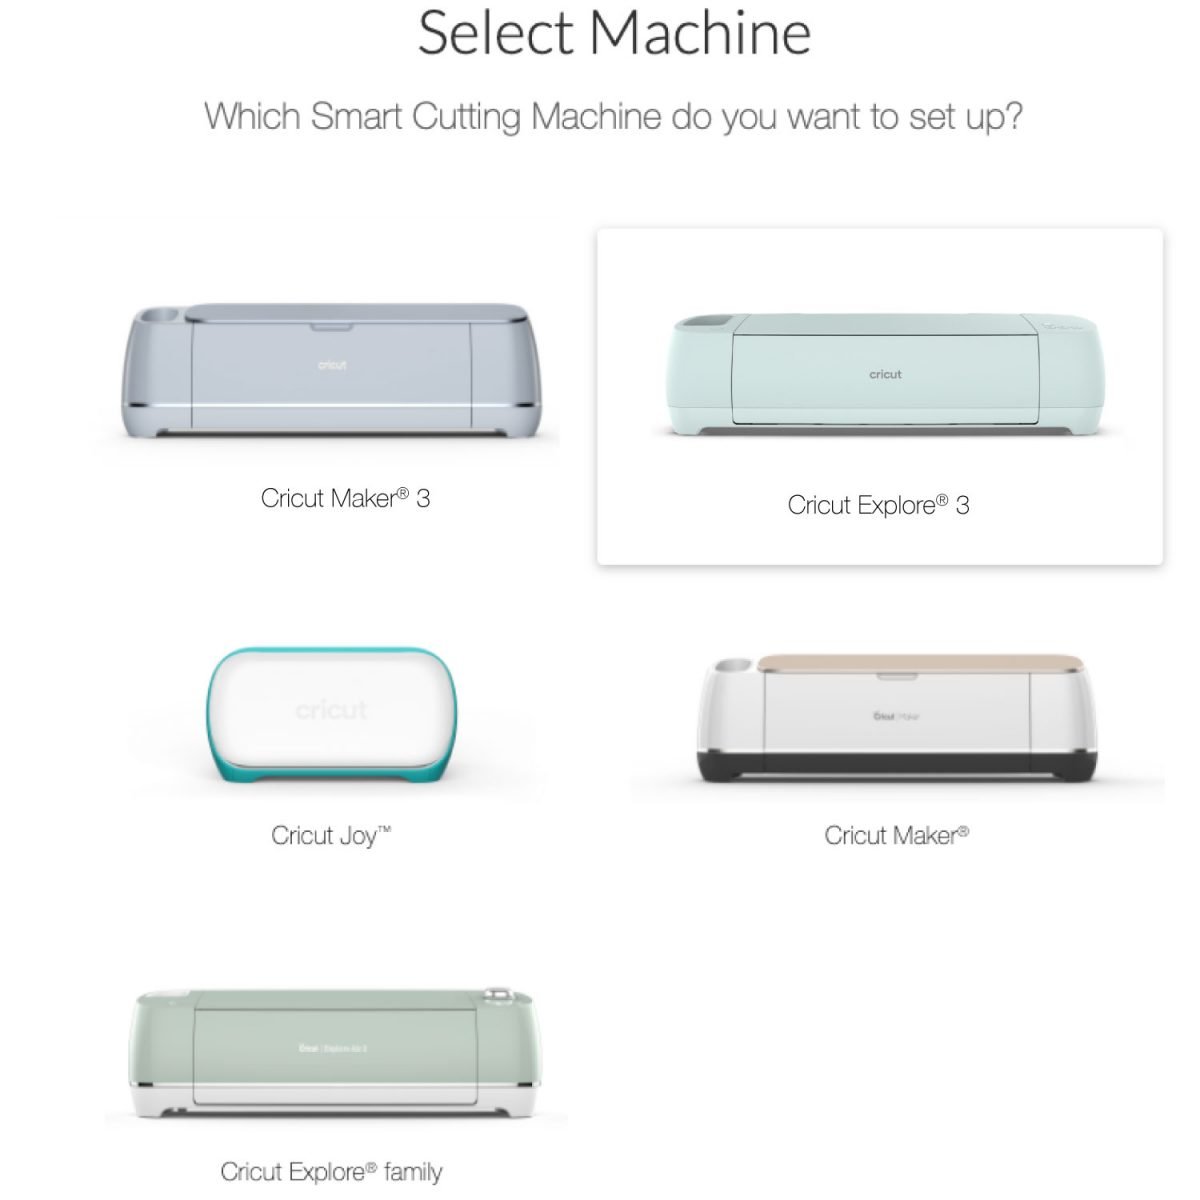 Screenshot showing Select Machine with Cricut Explore 3 